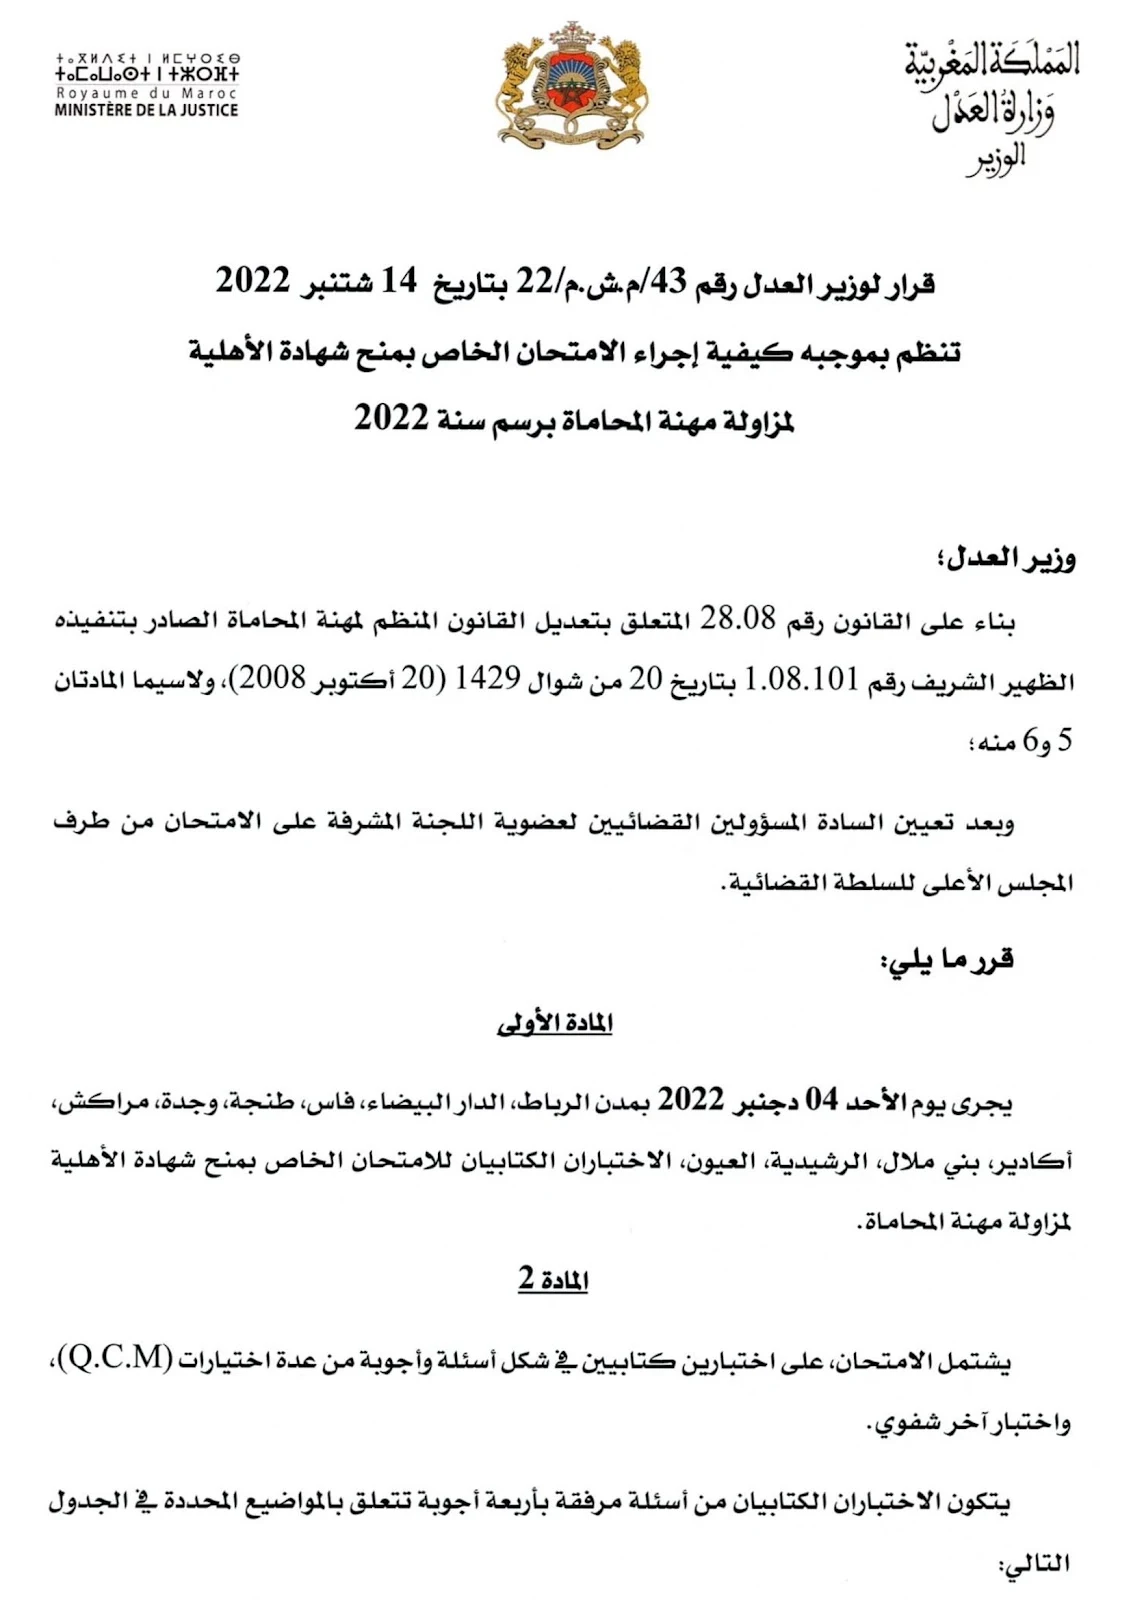 وزارة العدل : الامتحان الخاص بمنح شهادة الأهلية لمزاولة مهنة المحاماة لسنة 2022، آخر اجل للتسجيل 4 أكتوبر 2022